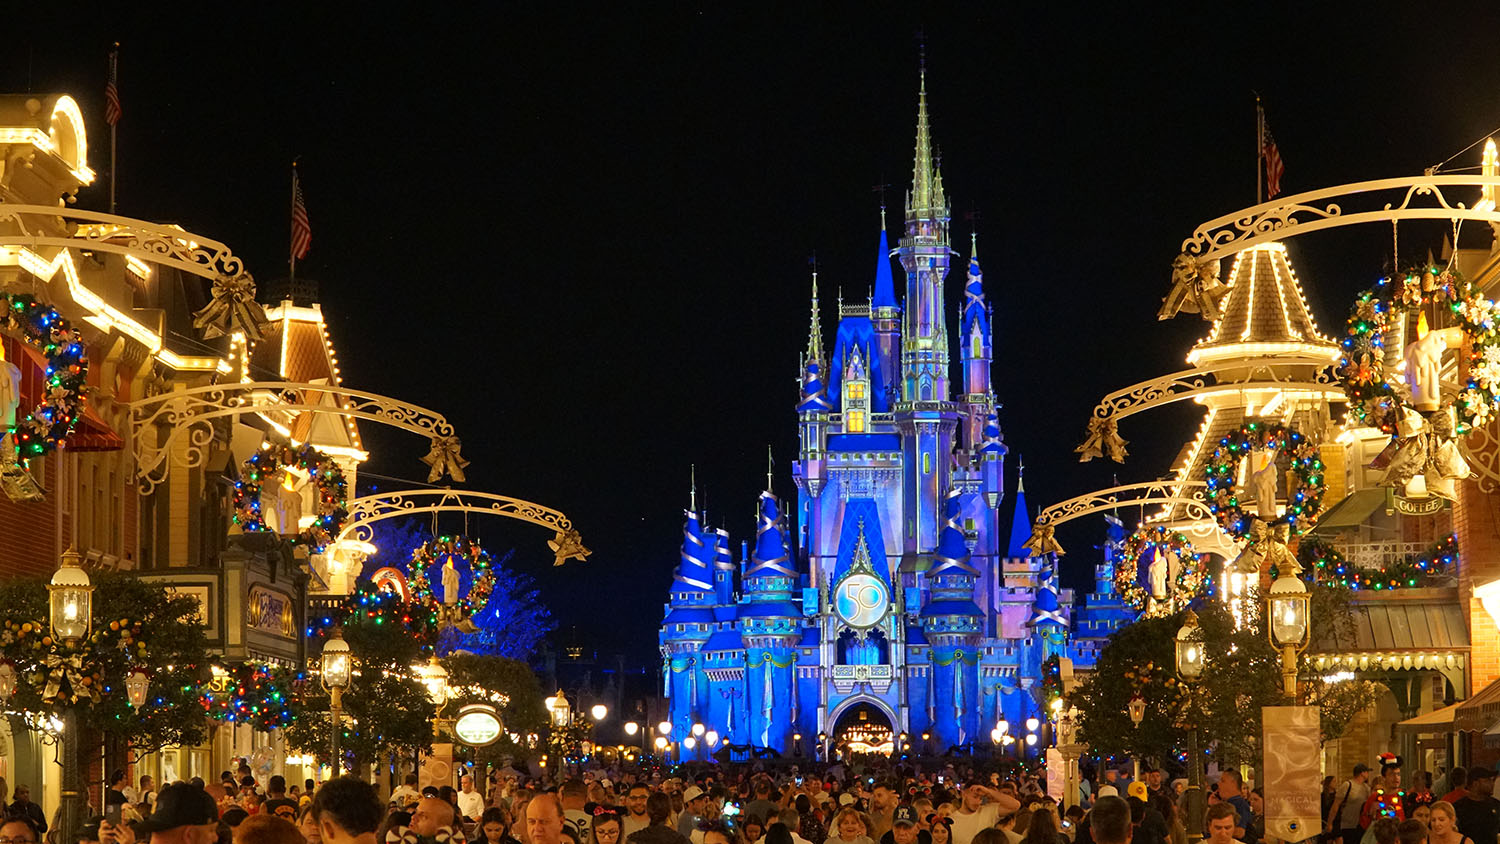 Best Buy: o shopping dos eletrônicos em Orlando - Vai pra Disney?